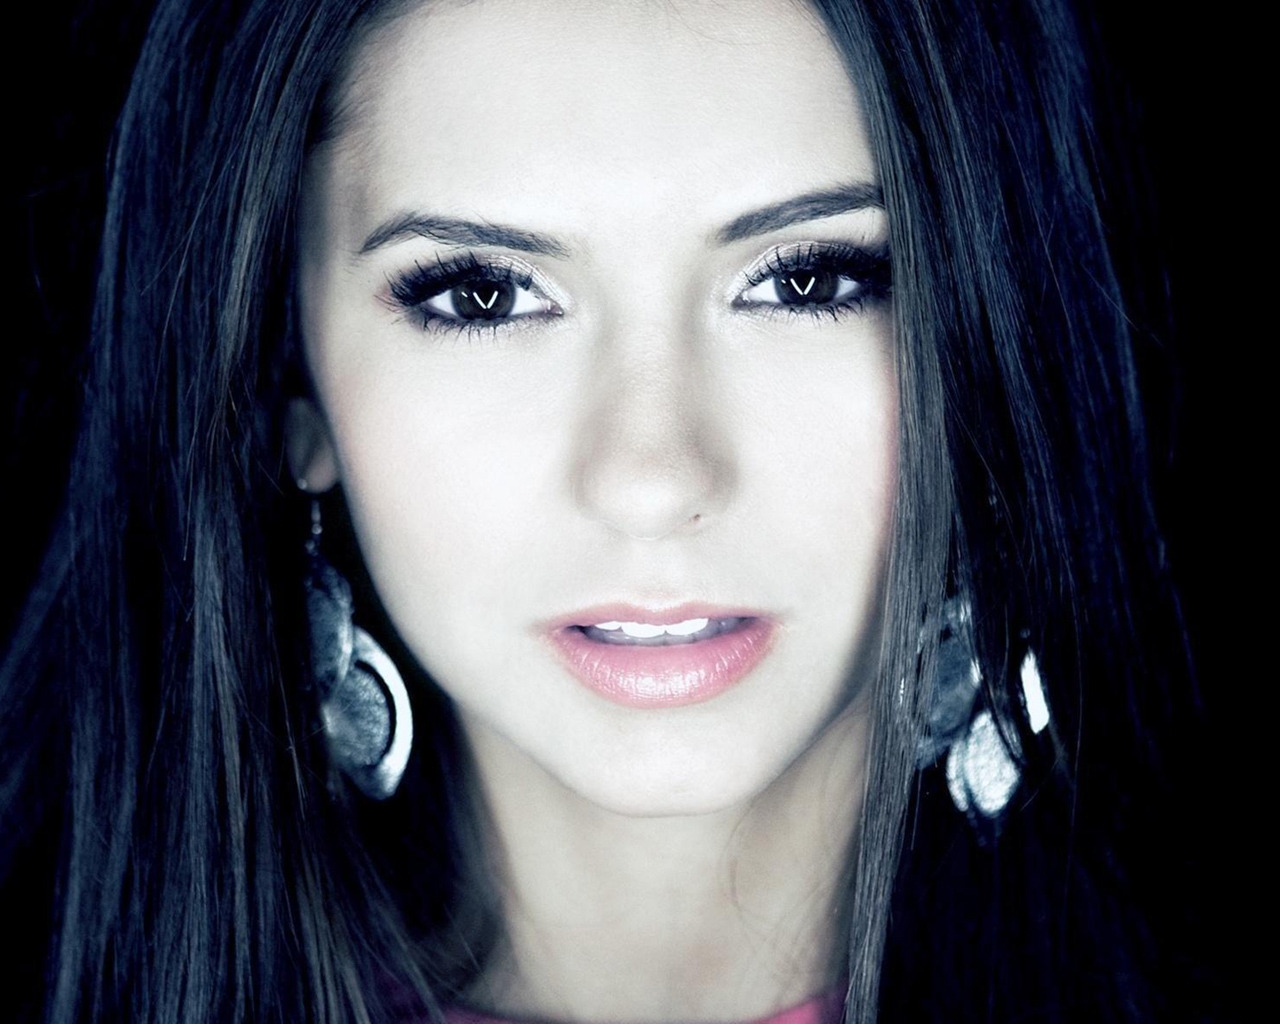 Nina Dobrev Face Close-Up for 1280 x 1024 resolution